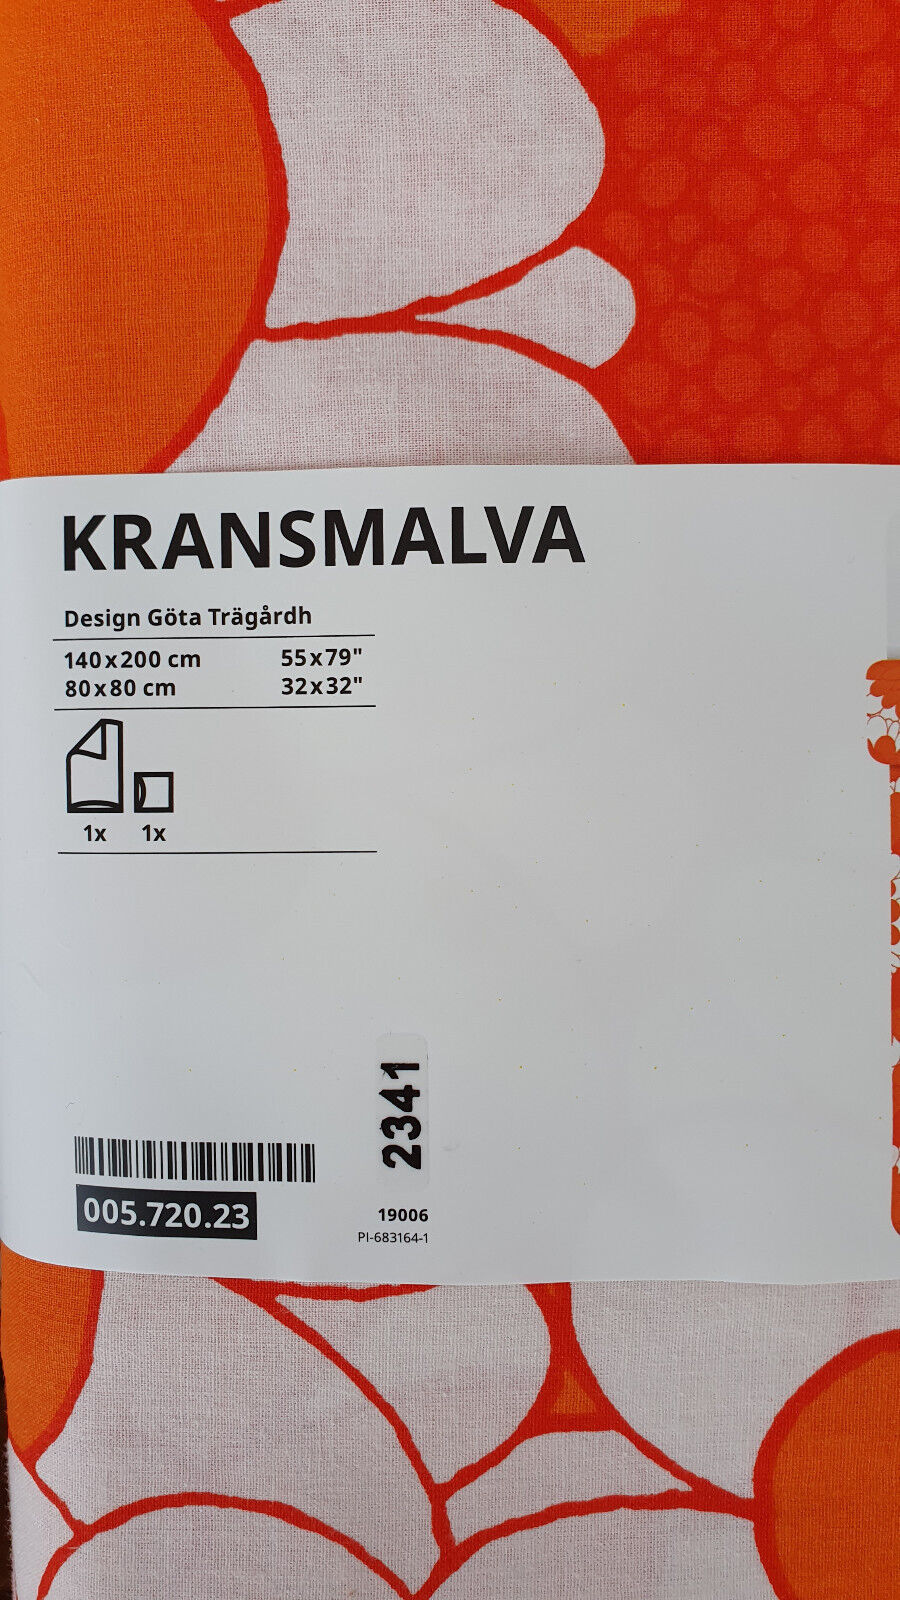 IKEA 2 Bettwäsche Sets 4-tlg. 70er große Blumen geblümt Retro Kransmalva Hippie